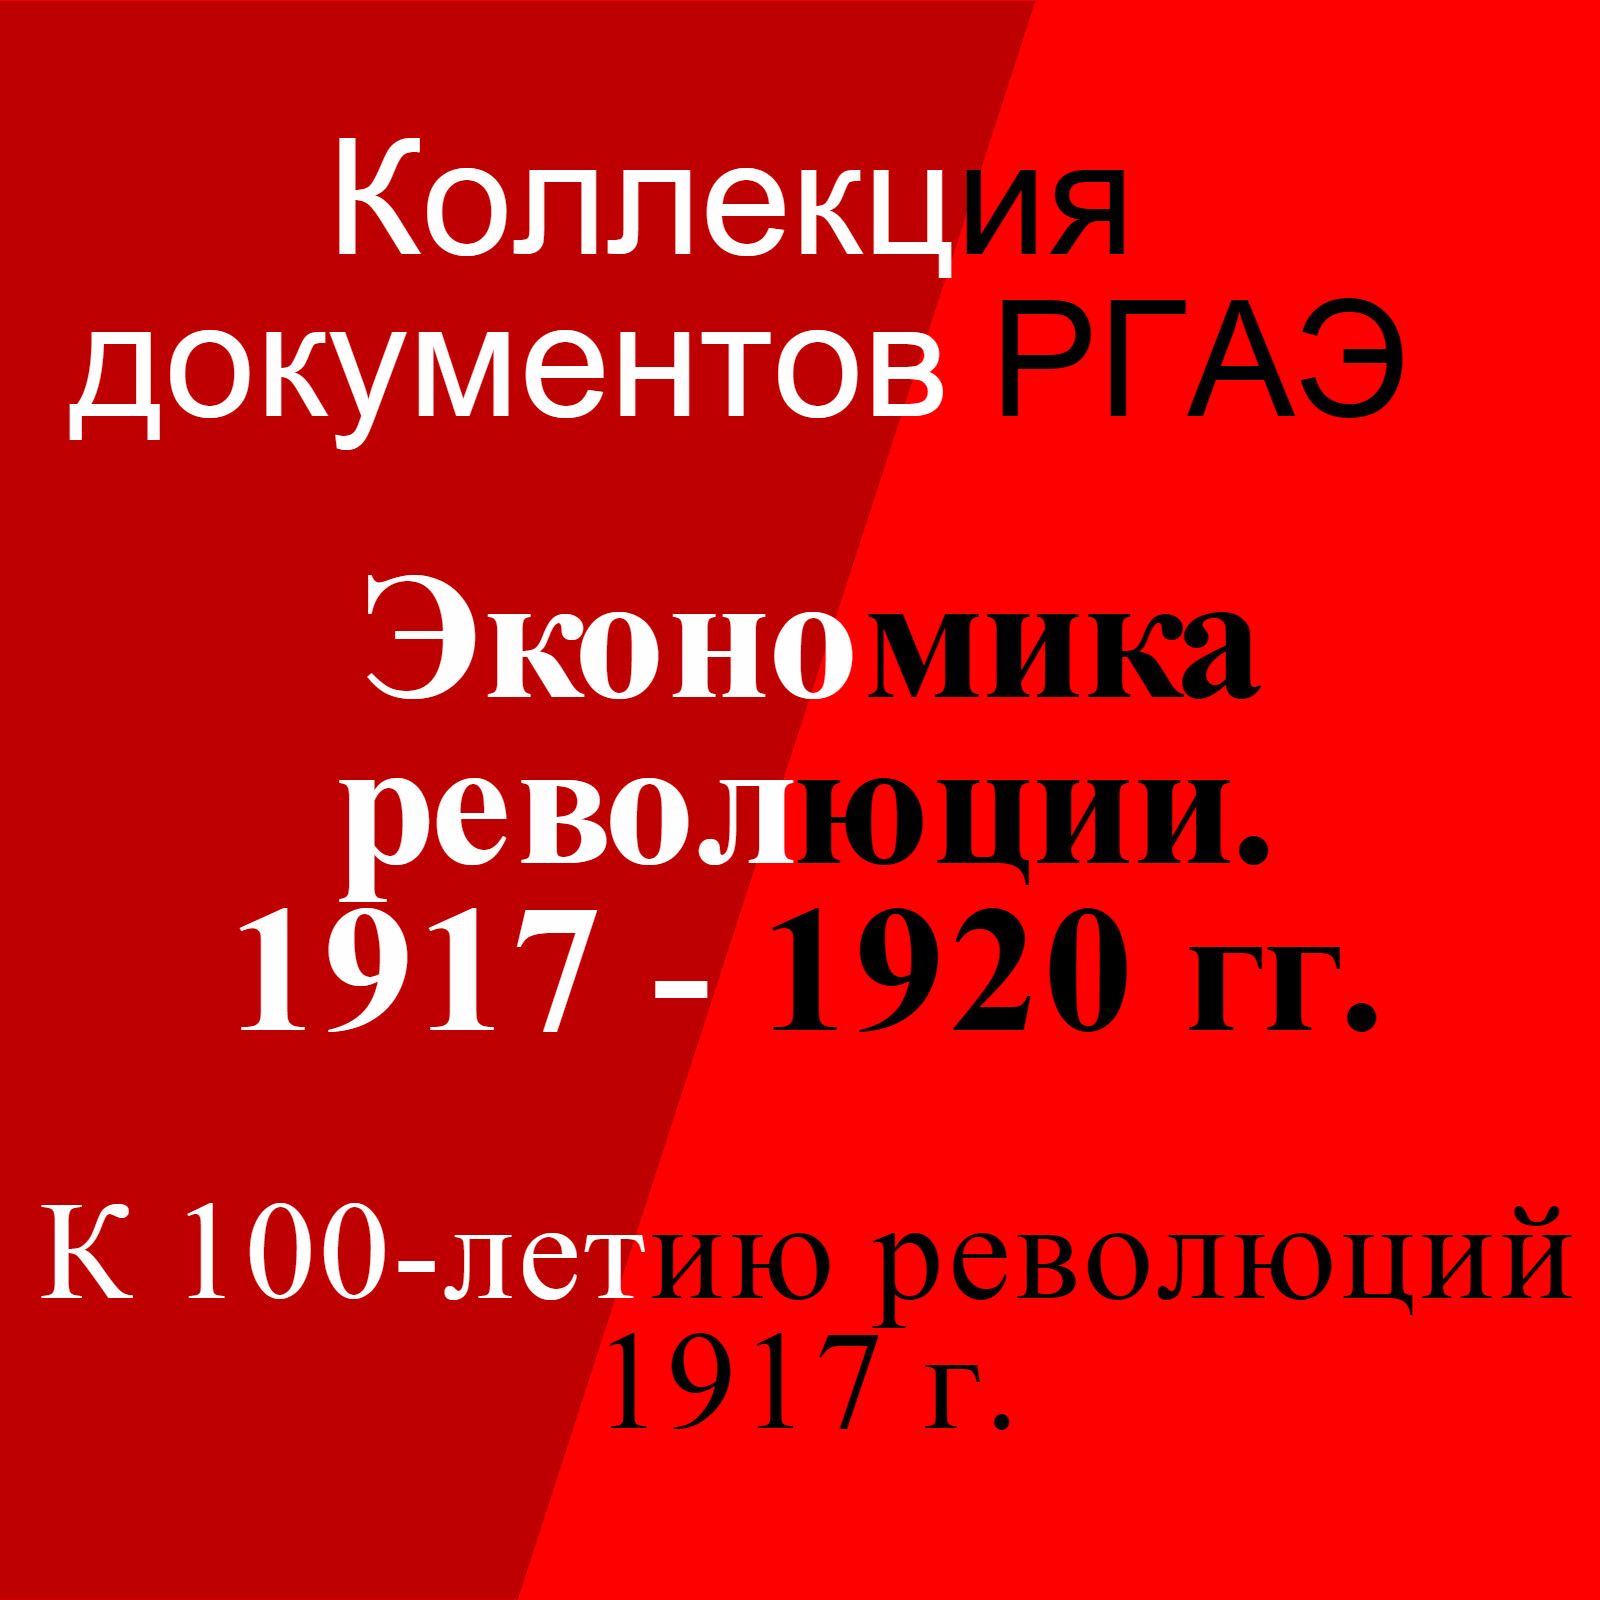 Экономика революции. 1917 - 1920 гг. (К 100-летию революций 1917 г.).